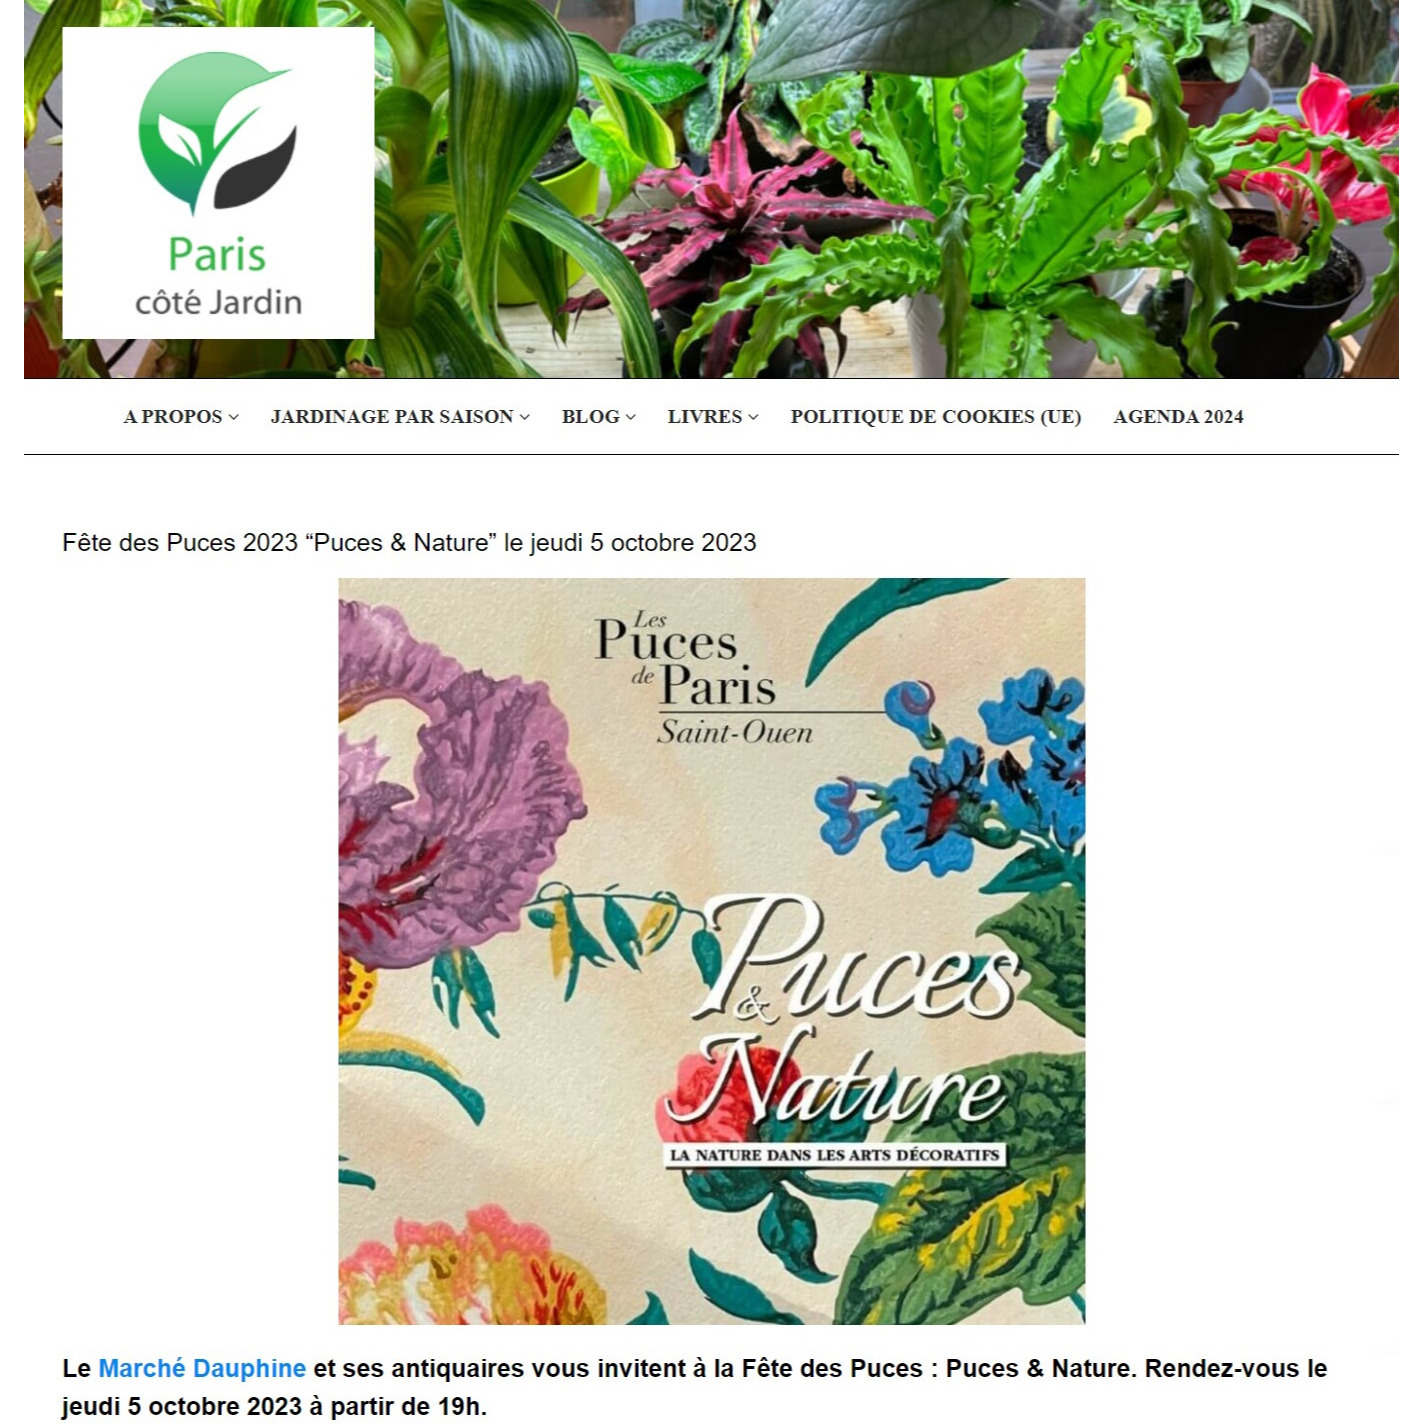 Paris côté jardin - Flea Market 2023 “Puces & Nature” on Thursday, October 5, 2023